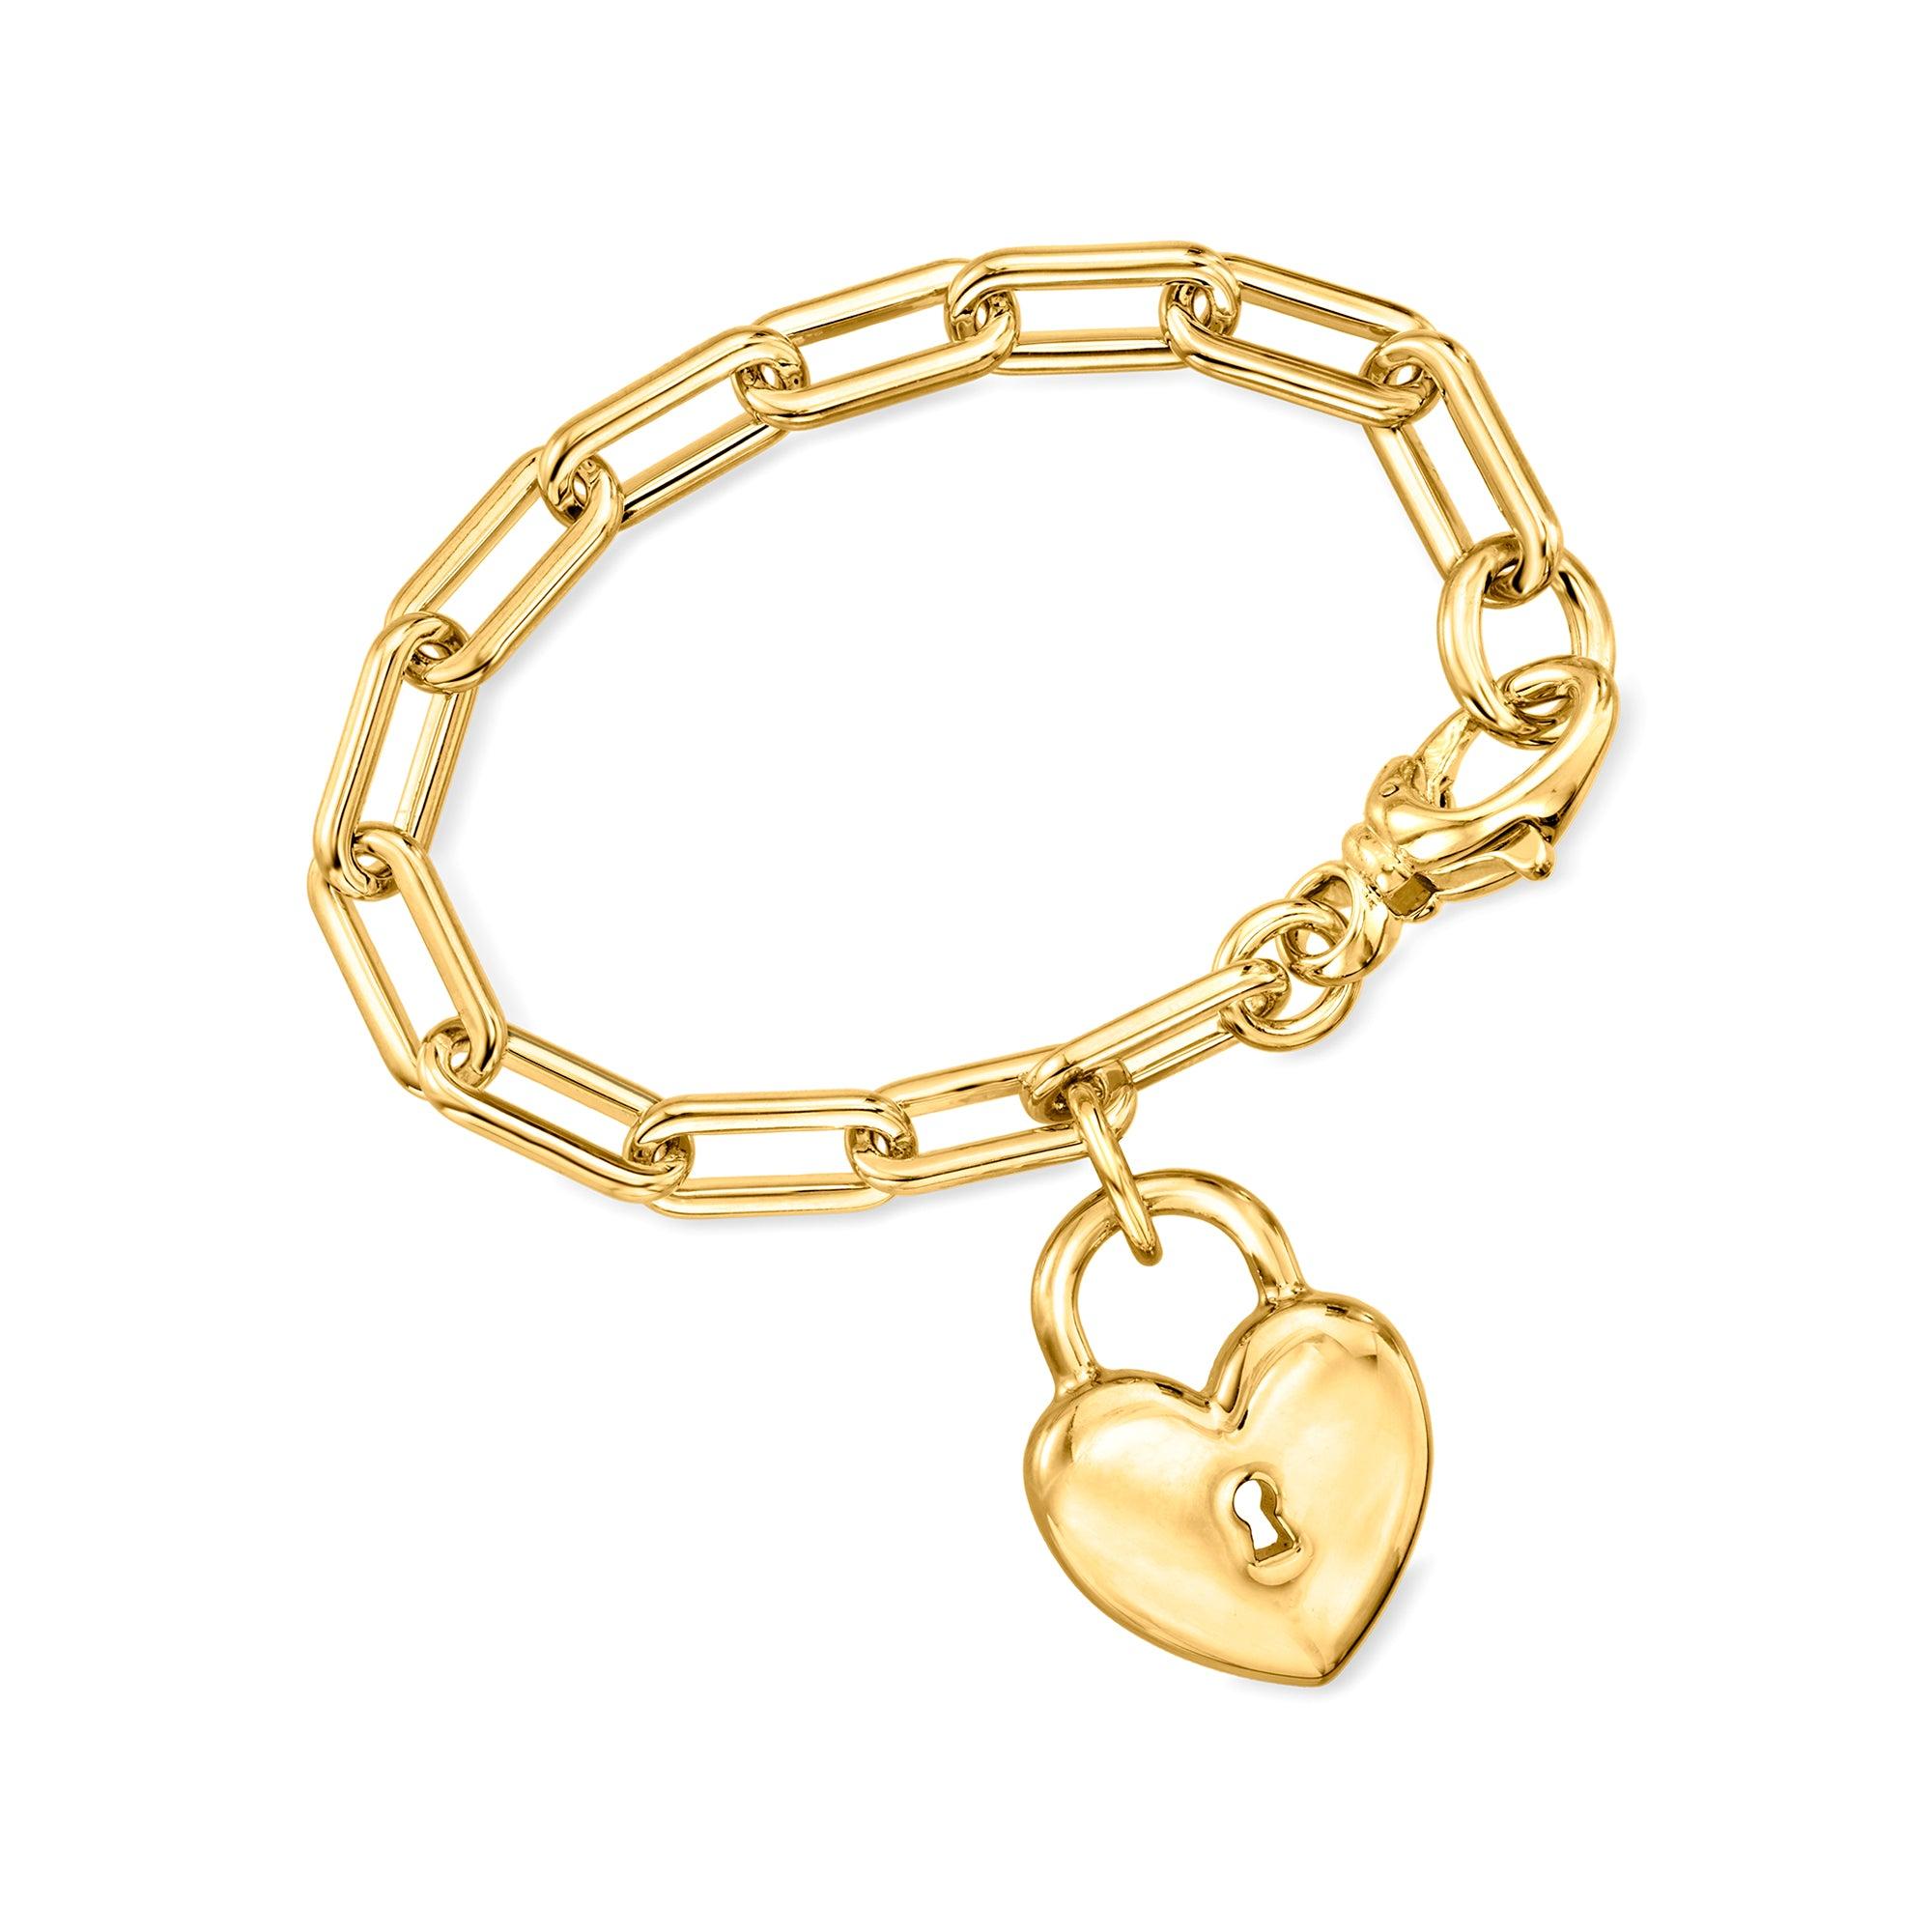 Ross-Simons Italian 14kt Yellow Gold Cross Charm Mesh Bracelet, Women's,  Adult - Walmart.com